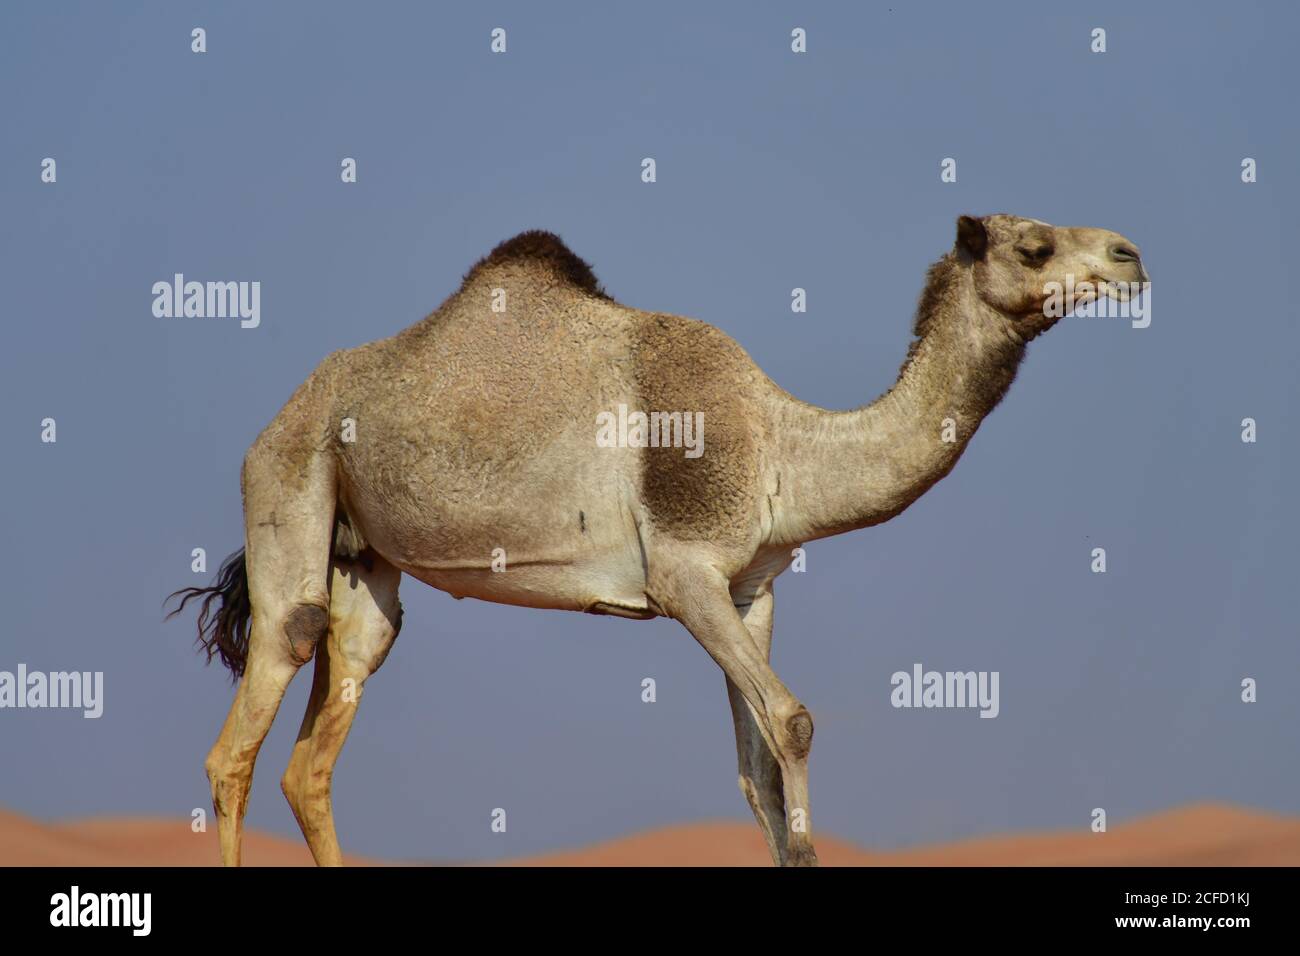 Arabisches Kamel (Dromedar) zeigt die schiere Größe und Fähigkeiten des Überlebens in den rauen Wüstenlandschaften der arabischen Halbinsel Landschaft. Stockfoto